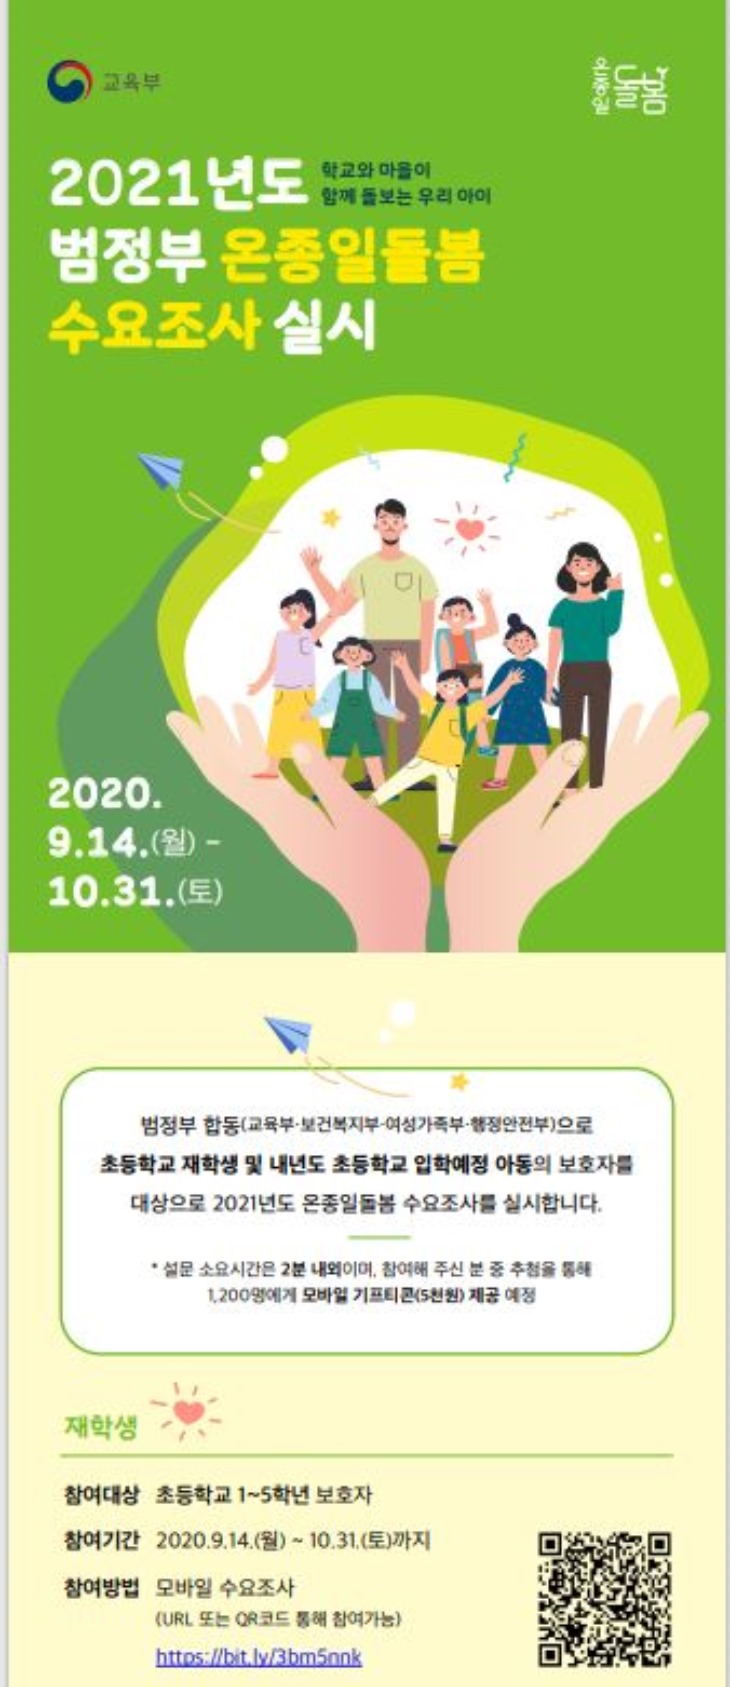 2.경북교육청, 2021 범정부 온종일돌봄 수요조사01.JPG